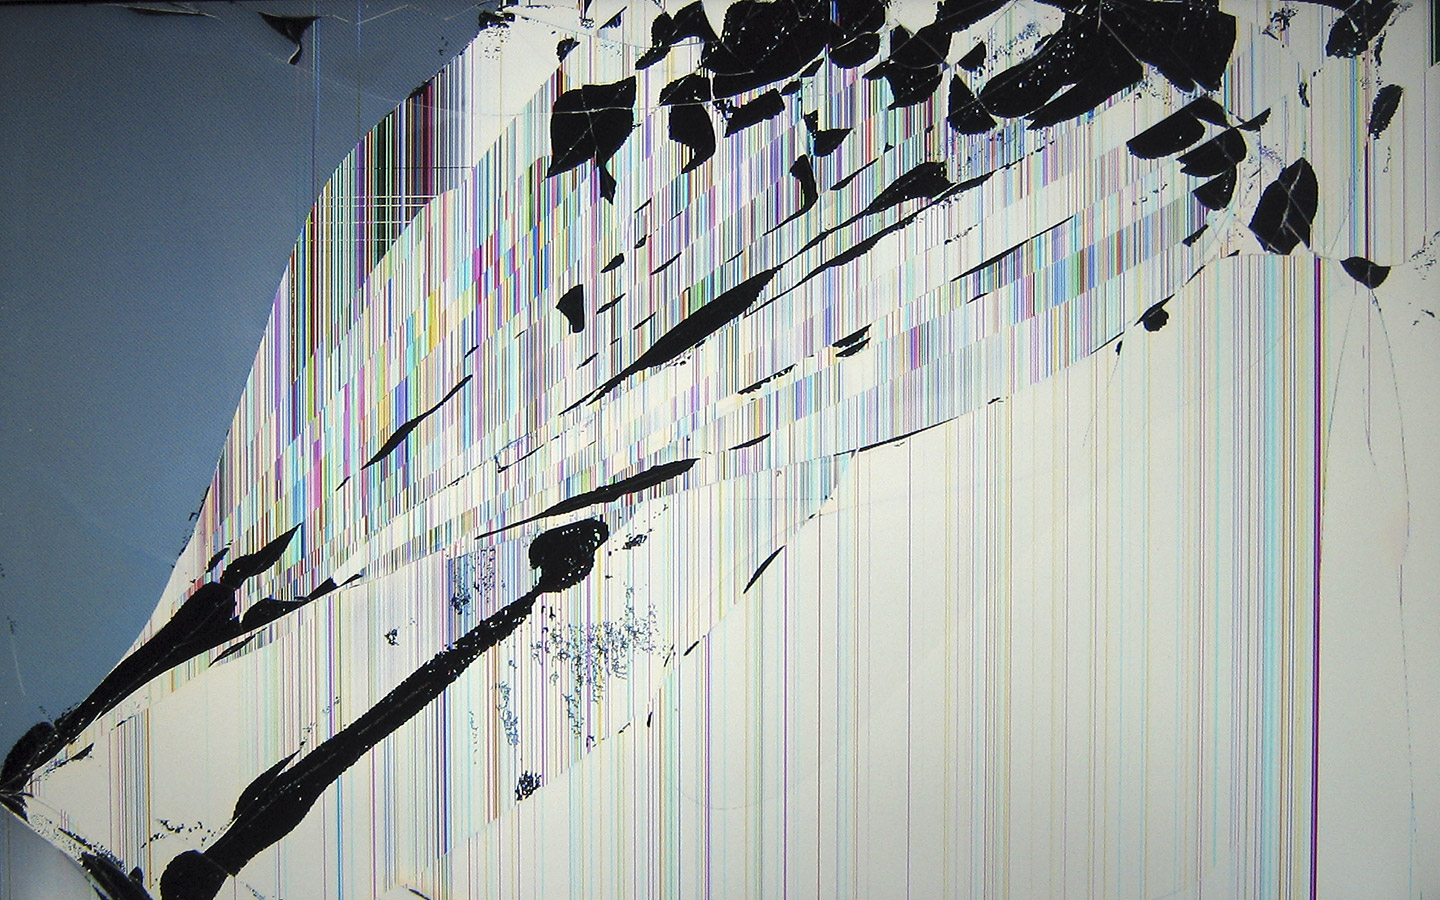 50+] Realistic Broken Screen Wallpaper - WallpaperSafari